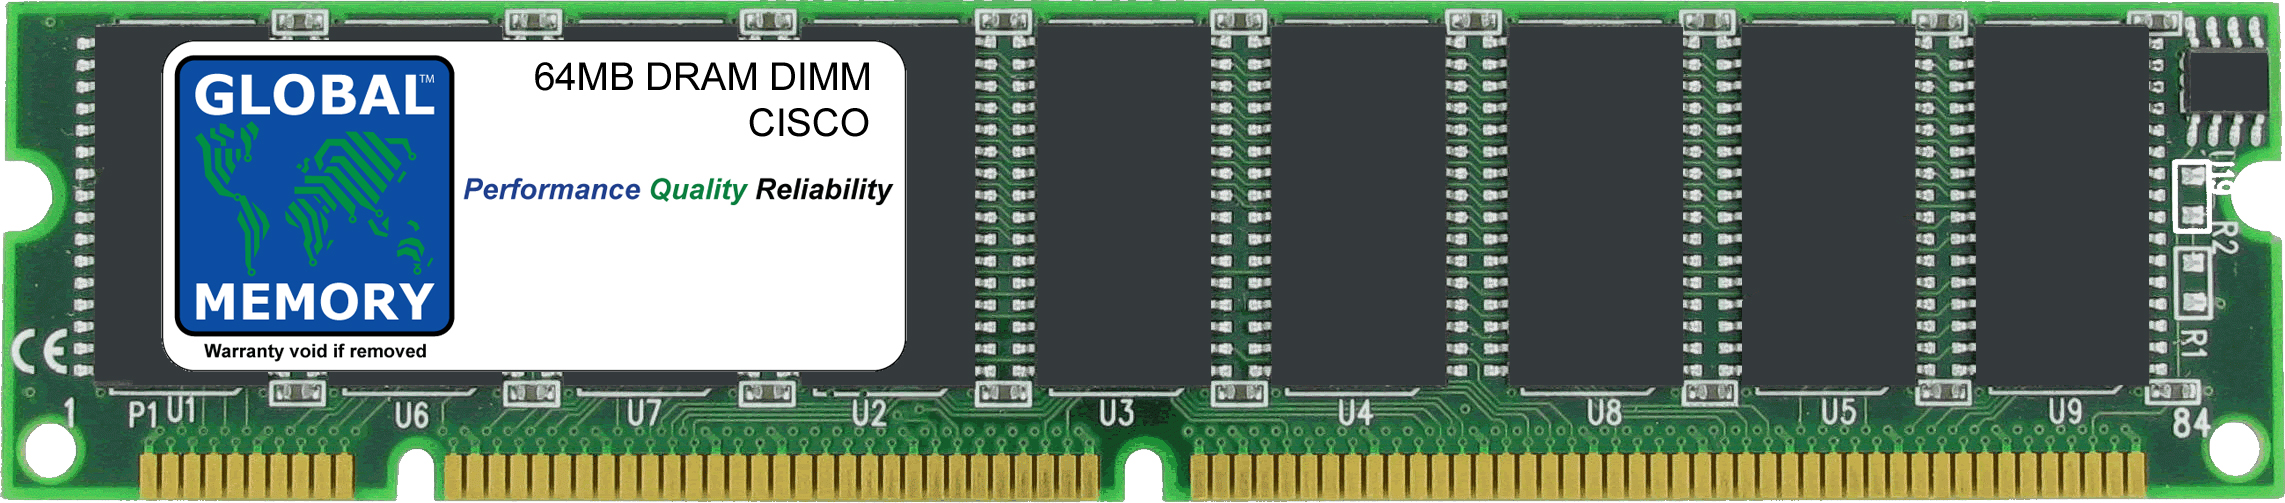 64MB DRAM DIMM MEMORY RAM FOR CISCO ICS 7750 ASI-81/160 , MRP200/300 & MRP3-8FXS/16FS (MEM-MRP-64D)